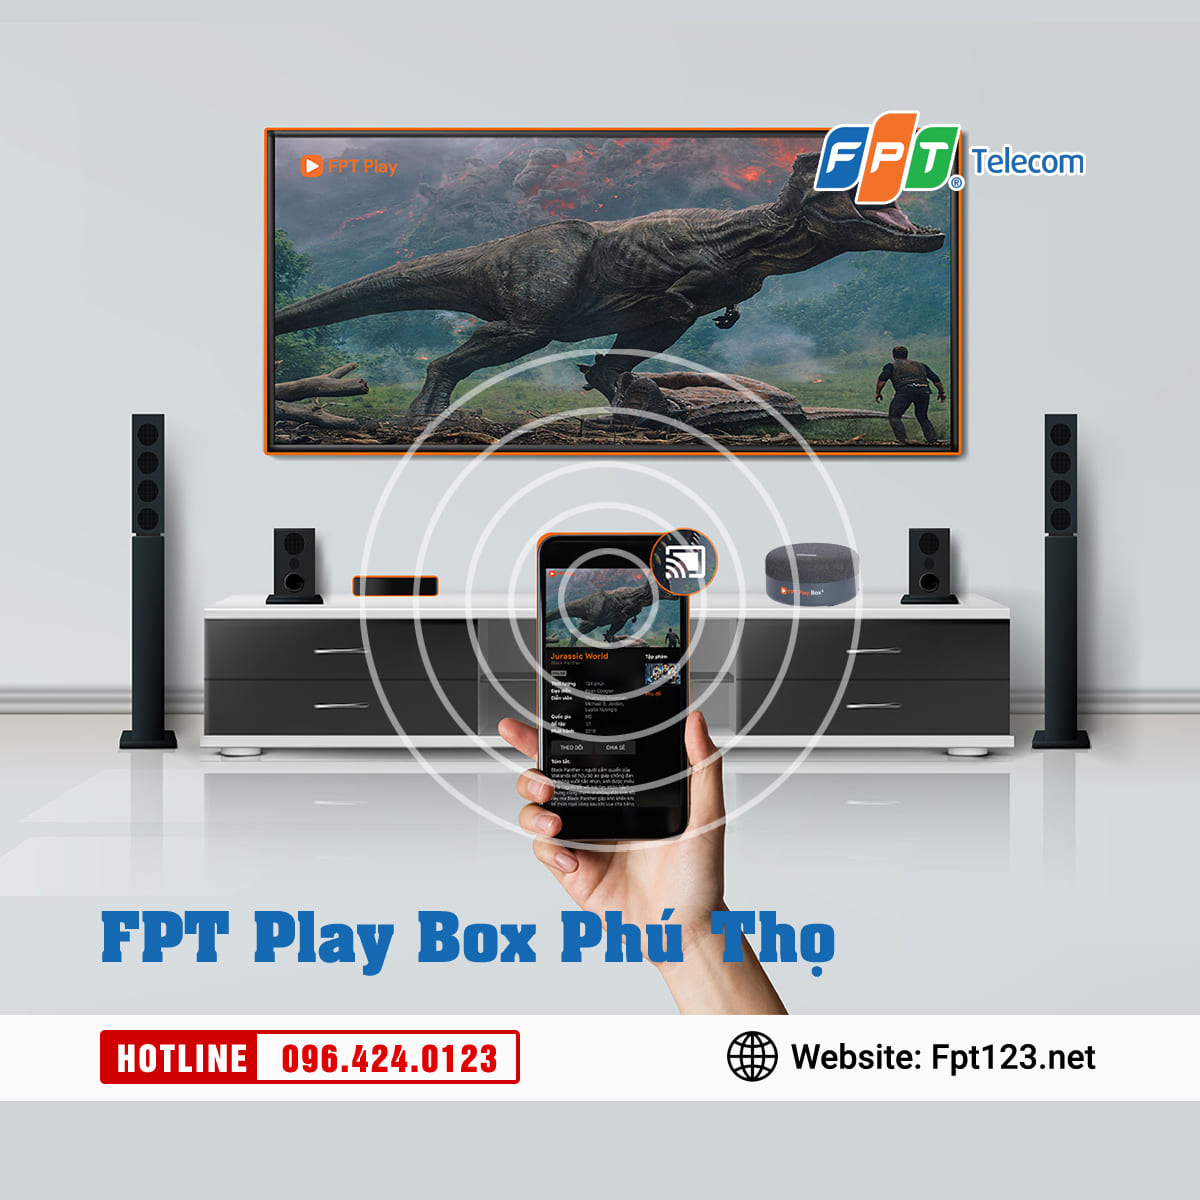 FPT Play Box Phú Thọ